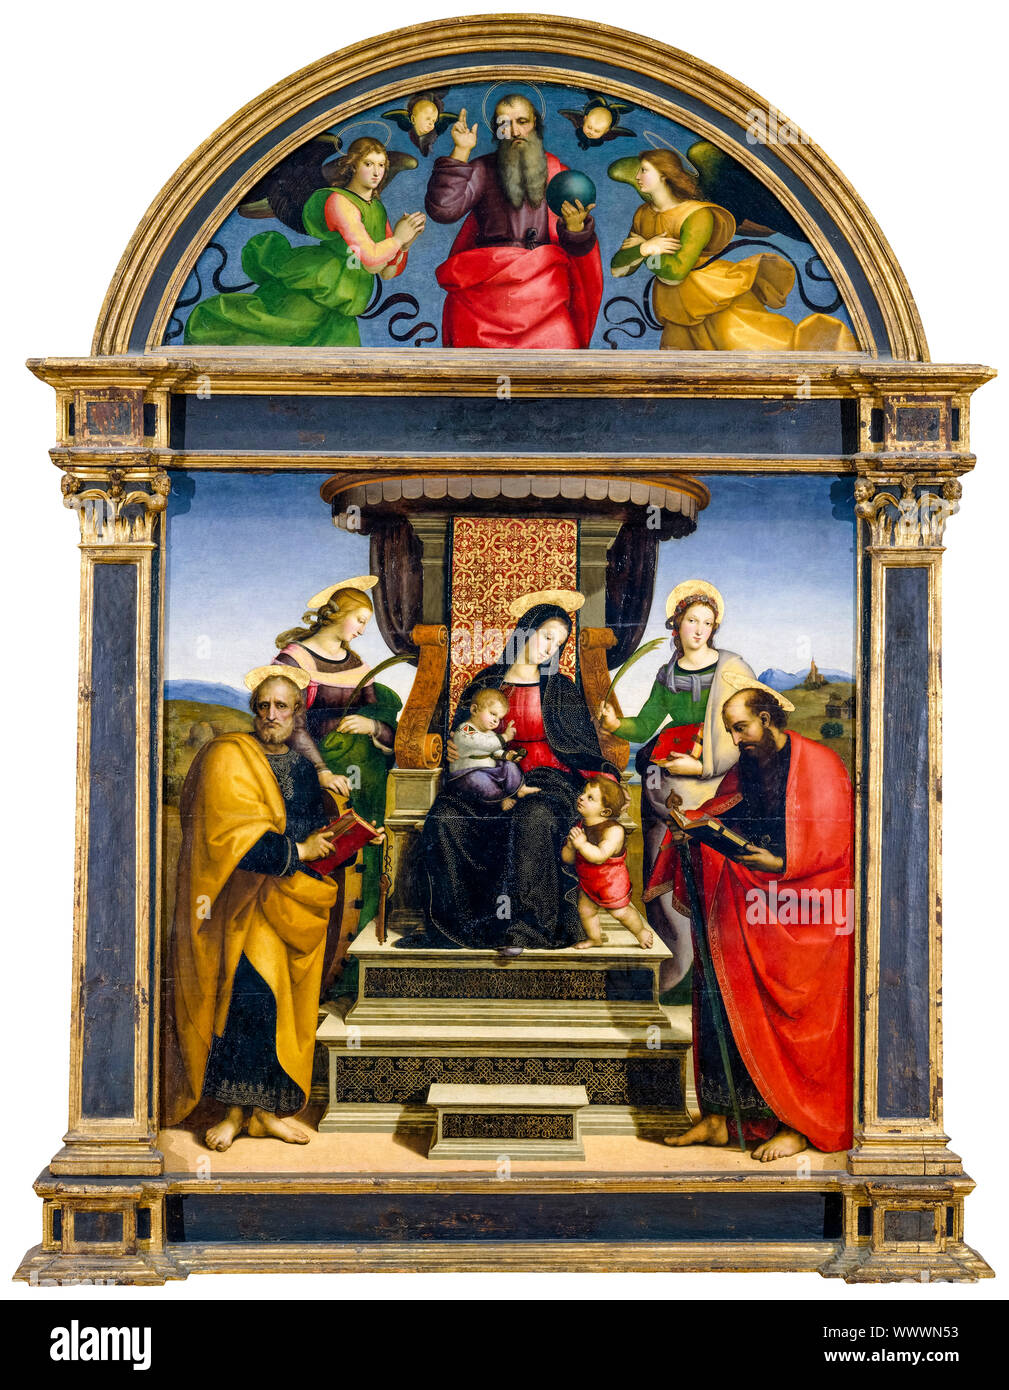 Rafael, la Virgen y el niño en el trono, con los Santos, pintura, circa 1504 Foto de stock